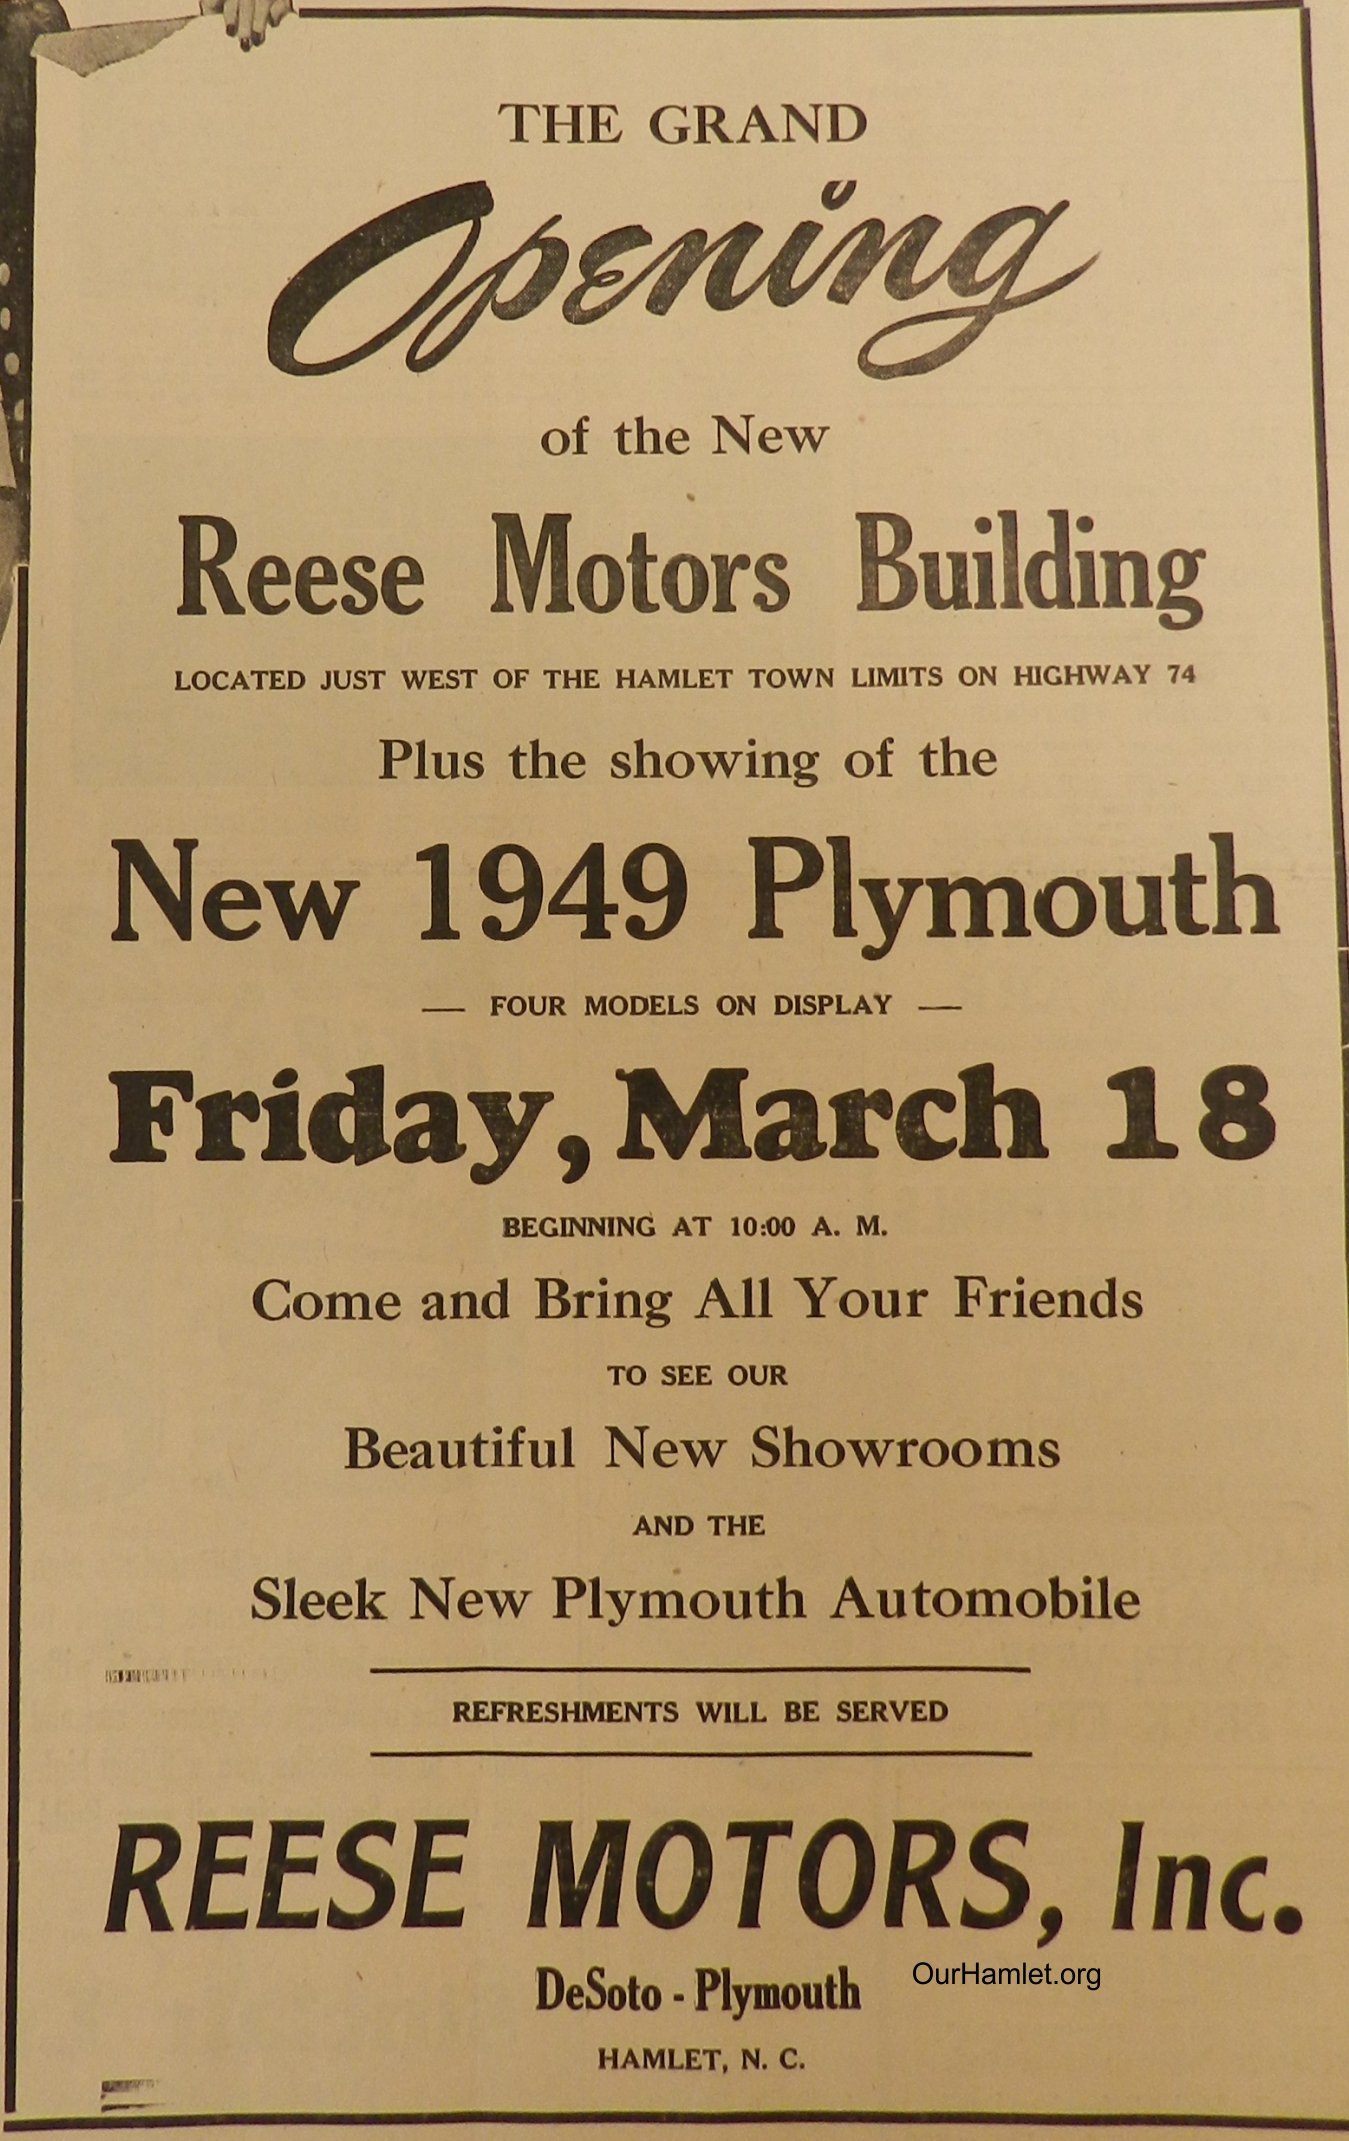 1949 Reese Motors opening OH.jpg